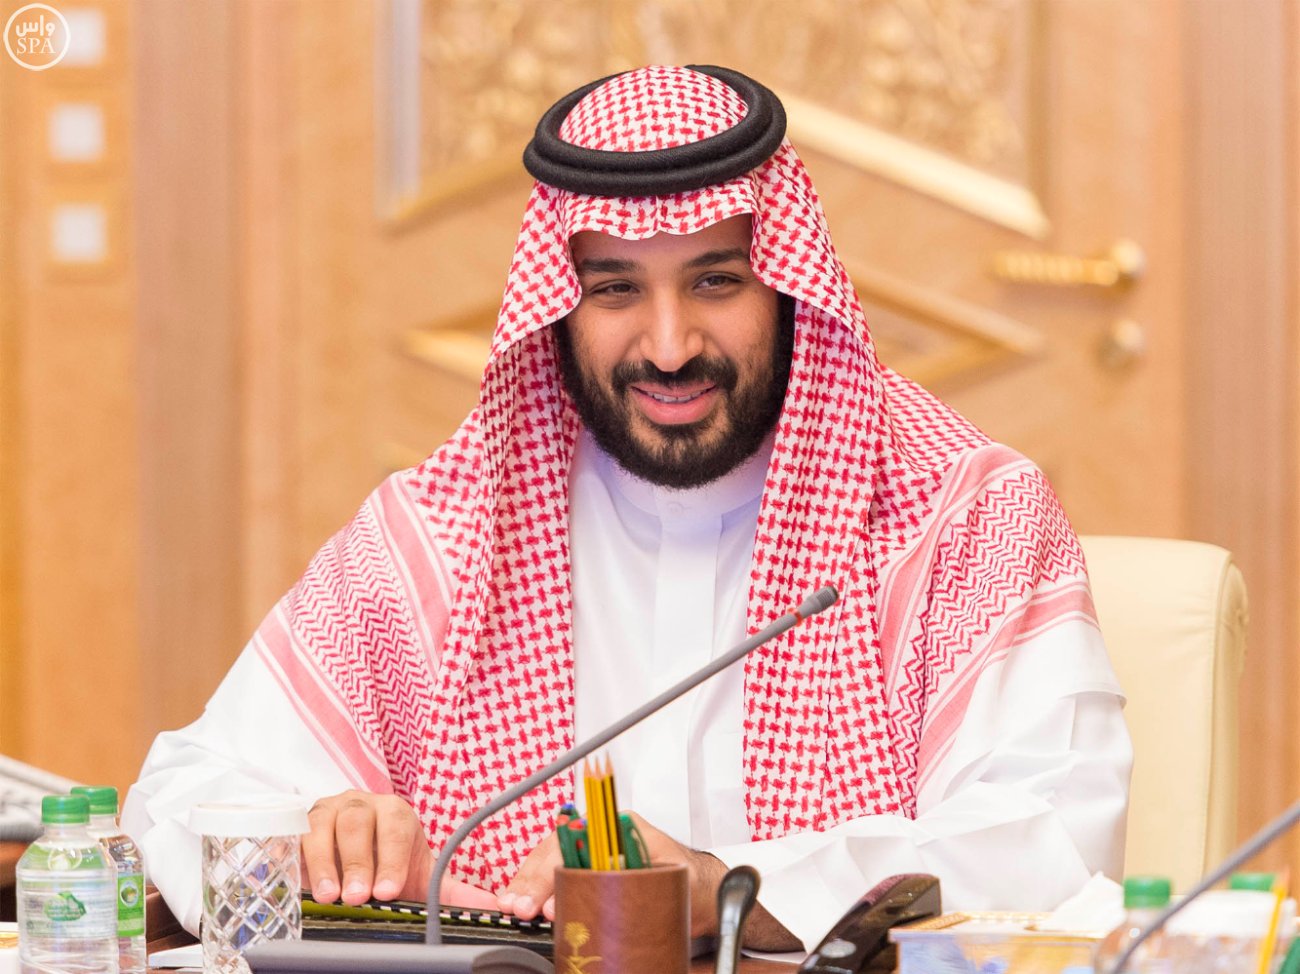 فاينينشيال تايمز: السعودية تطبق خططاً اقتصادية طموحة تراعي مصالح الفقراء